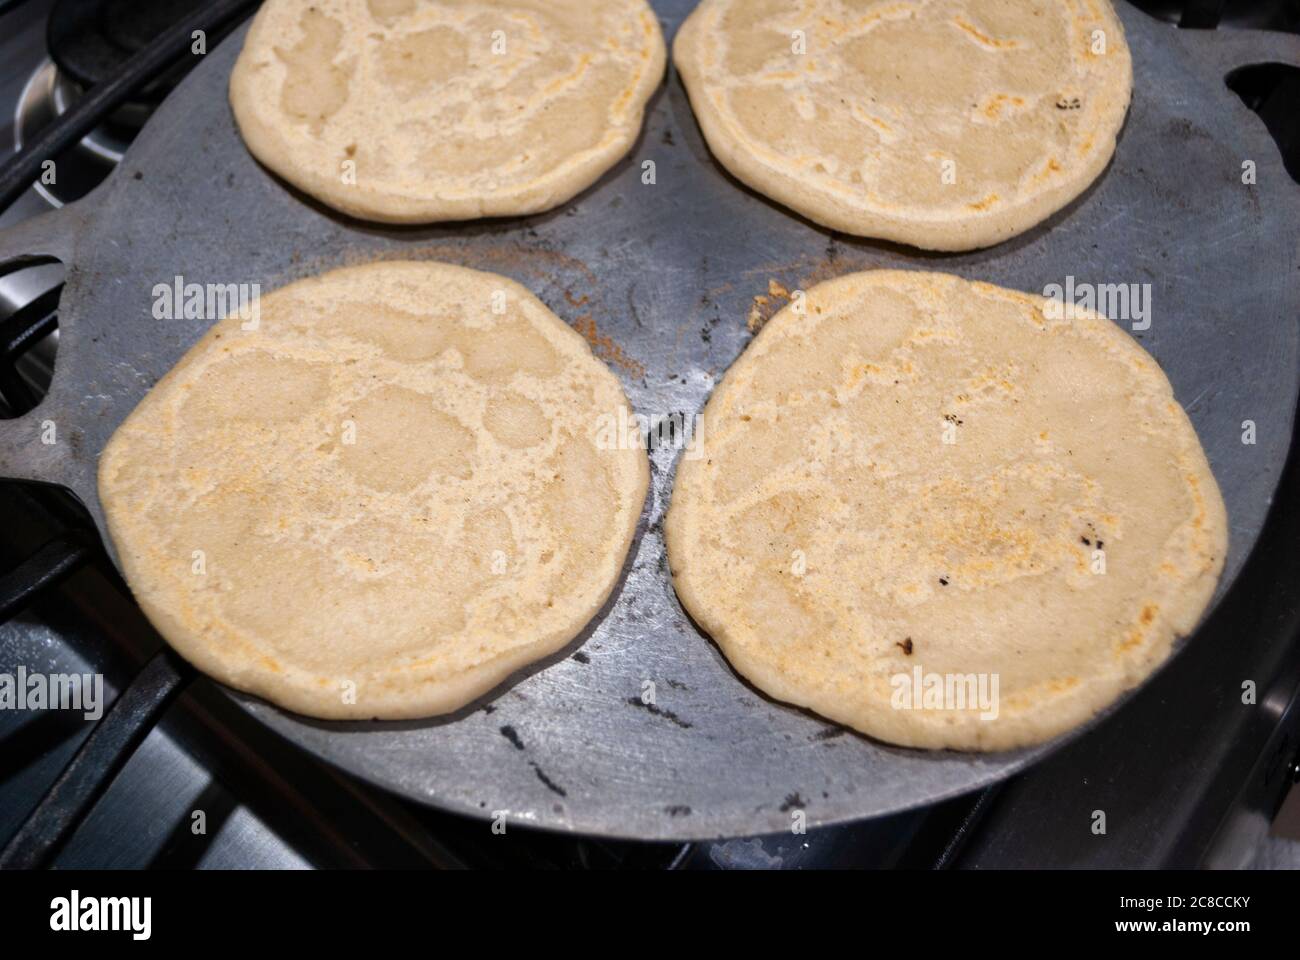 Comal para tortillas a mano recién hechas.: fotografía de El Gavilán  Barbacoa de Pollo, Toluca - Tripadvisor